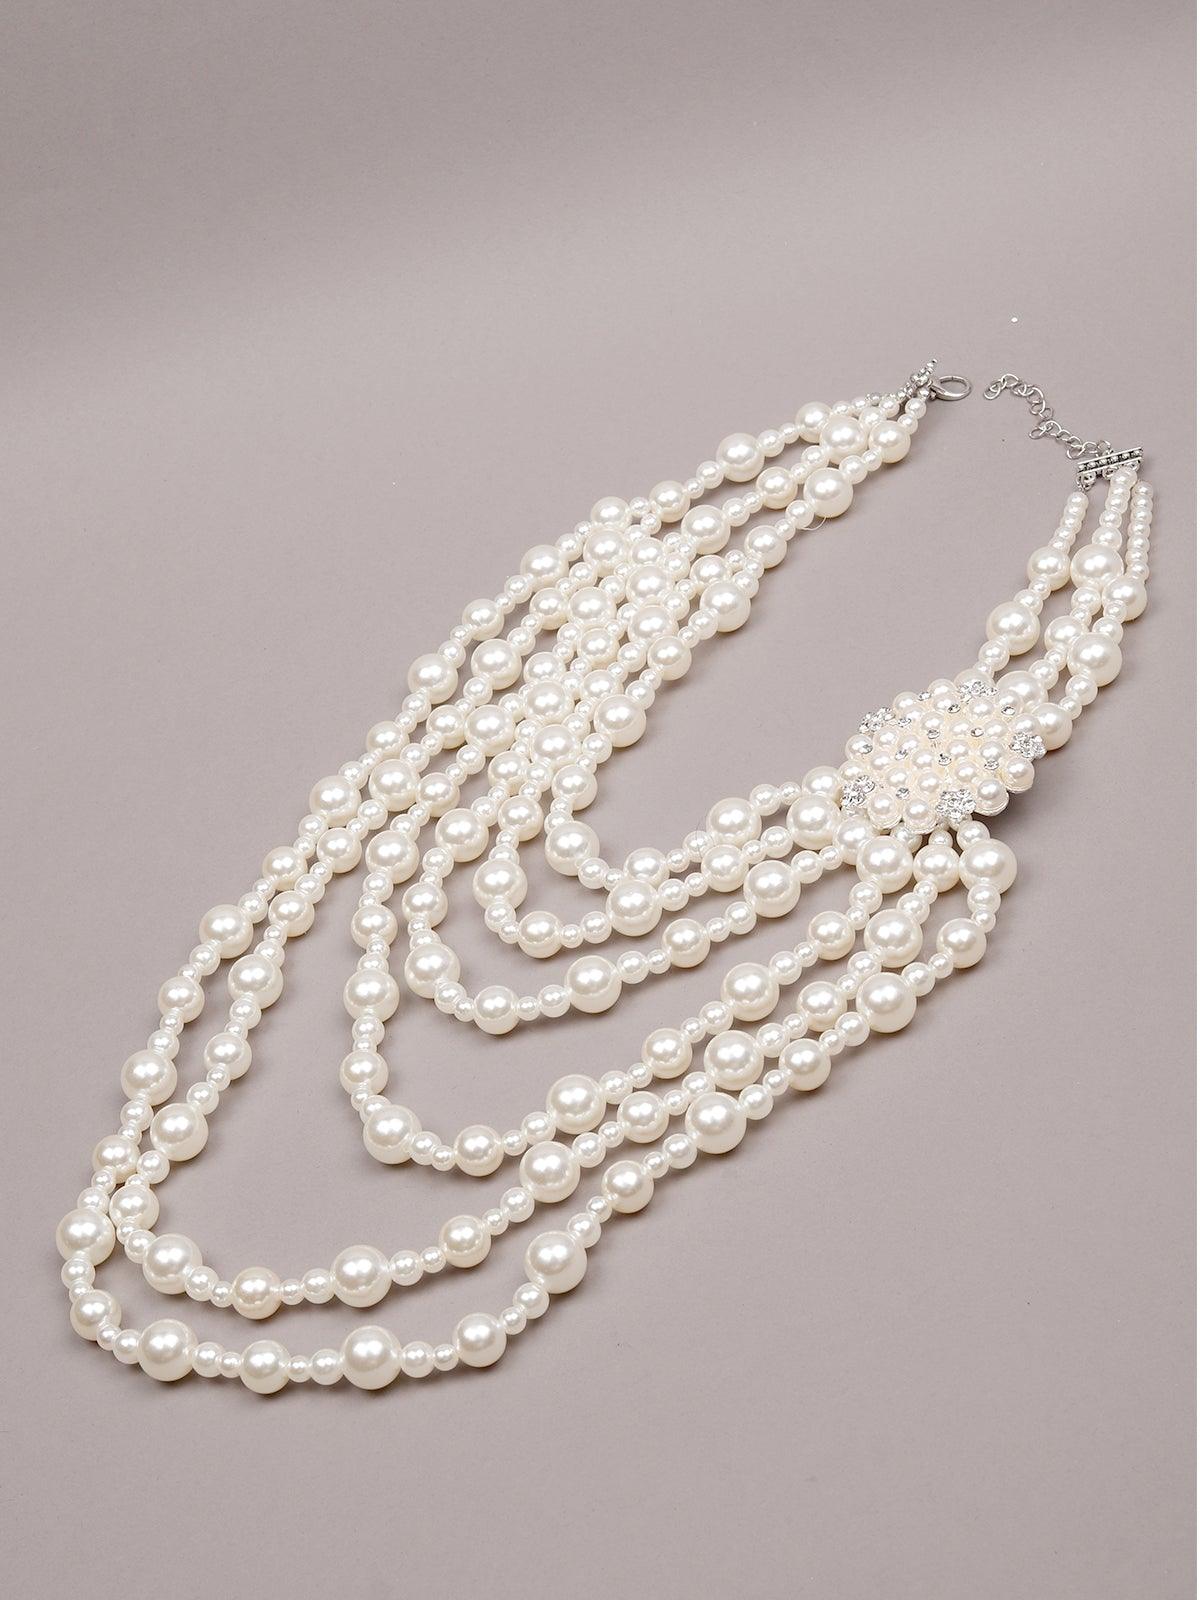 Beautiful Elegant Pearl Necklace Set - Odette